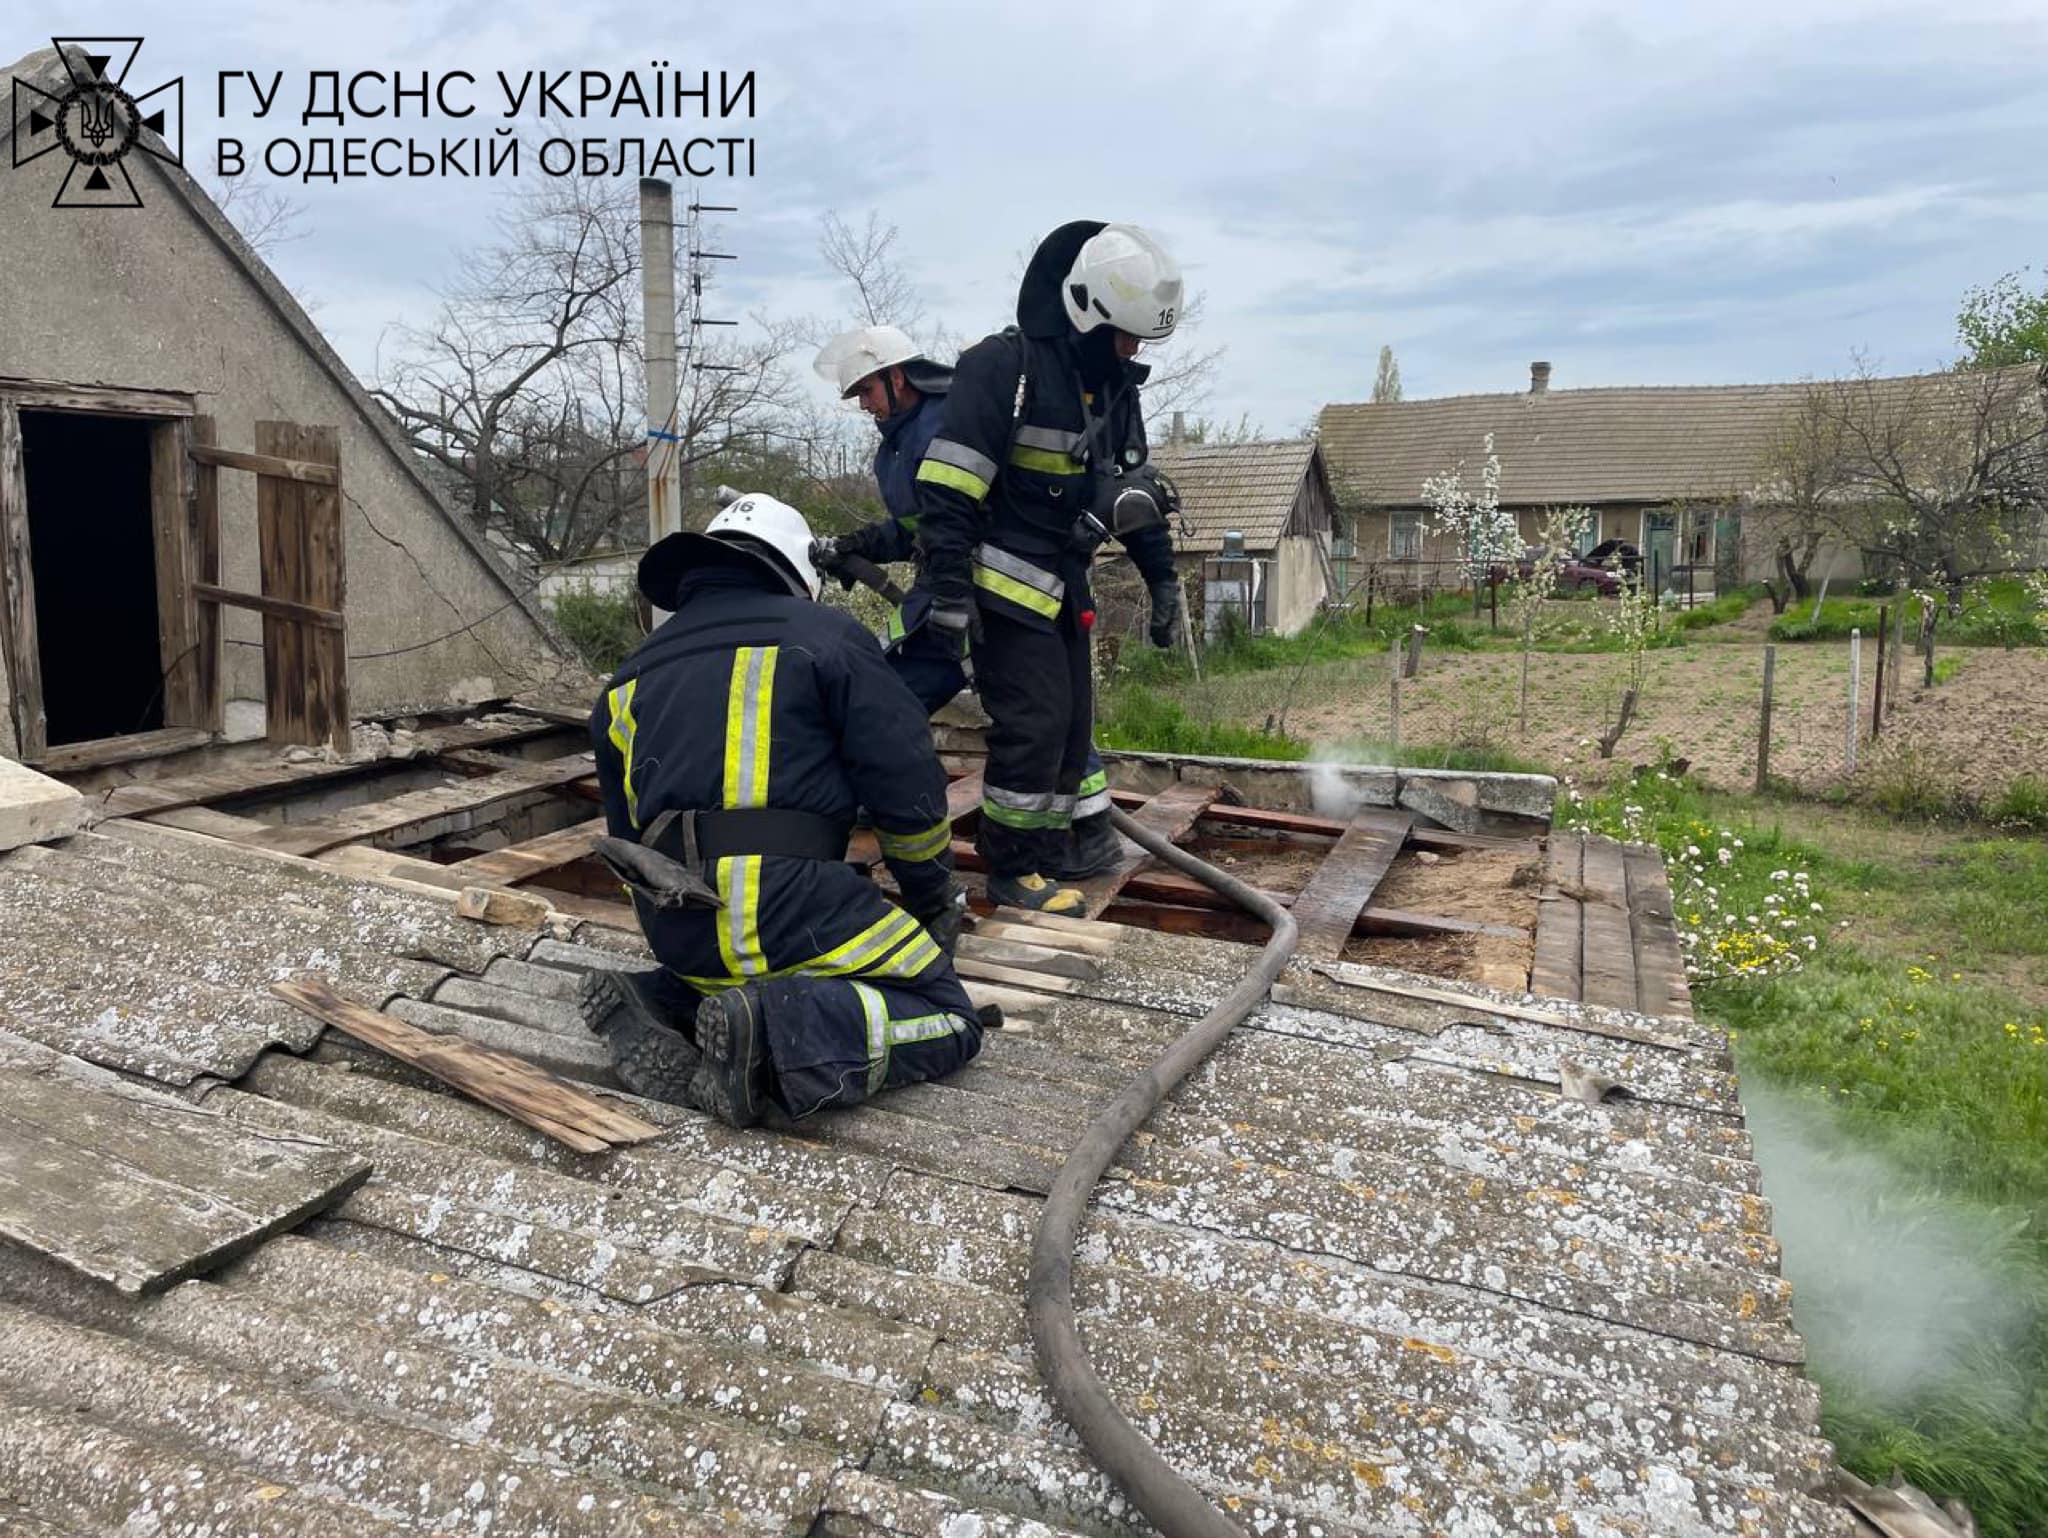 Вранці у Білгород-Дністровському районі палав житловий будинок